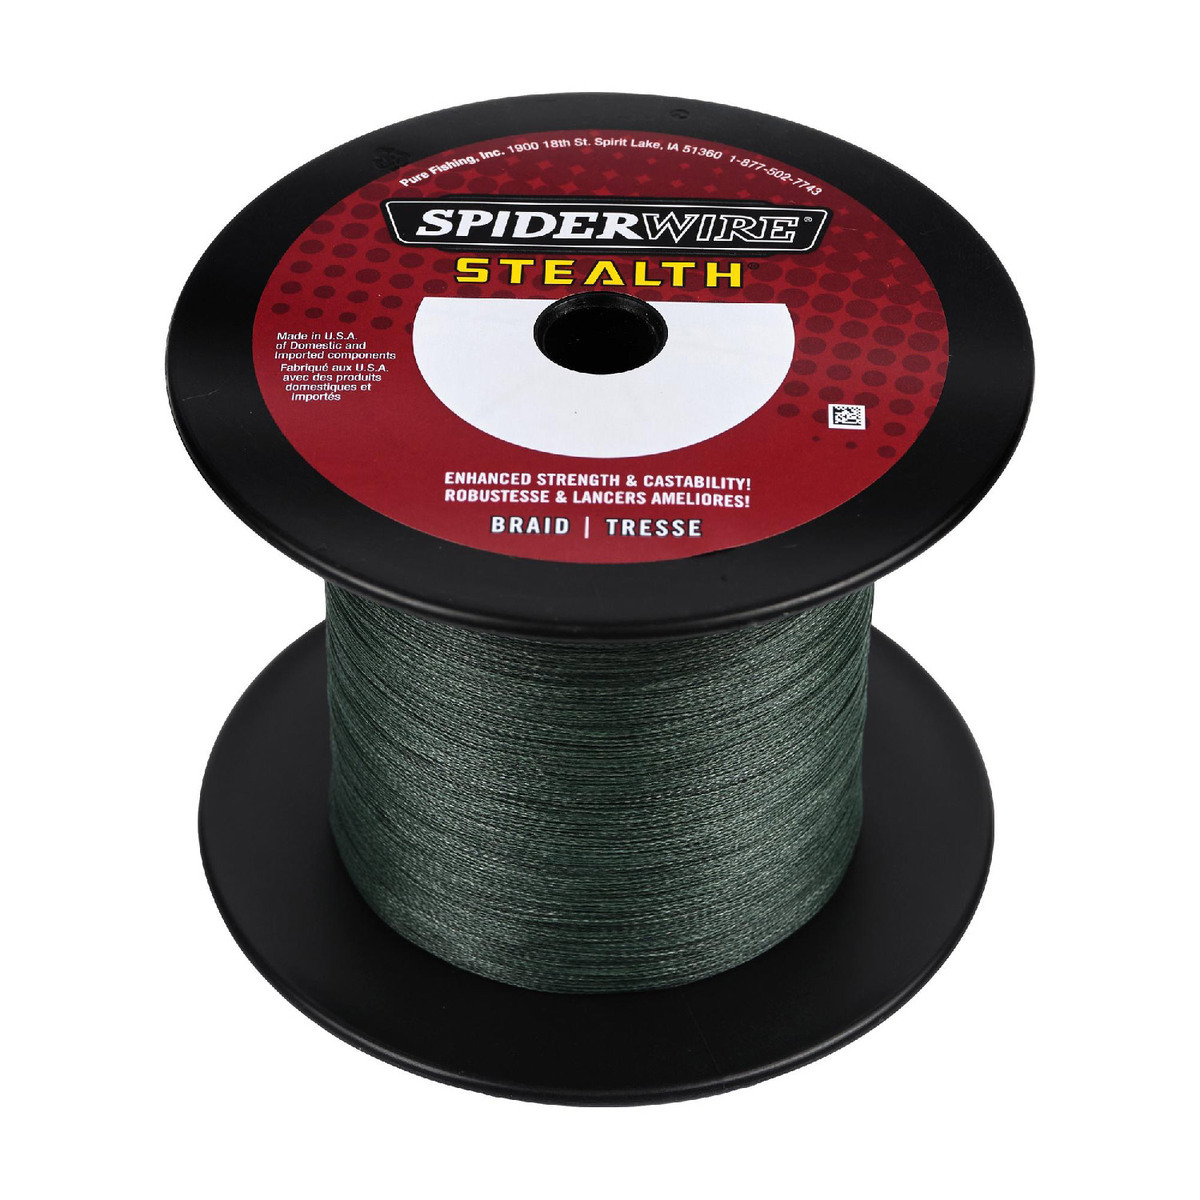 https://www.sportsmans.com/medias/spiderwire-stealth-braided-fishing-line-150lb-moss-green-3000yd-1779831-1.jpg?context=bWFzdGVyfGltYWdlc3wyNDA4Nzh8aW1hZ2UvanBlZ3xoN2MvaDJhLzEwOTE4NjI3ODM1OTM0LzE3Nzk4MzEtMV9iYXNlLWNvbnZlcnNpb25Gb3JtYXRfMTIwMC1jb252ZXJzaW9uRm9ybWF0fDYxNDMzZmZhMGJkZWQwMjQzYjBmMDBmZjAxMmVkYTI2MDg1NDU4OTI3ZjY1NWRmOTVjNjNiMGMwMjU1Yjc5YzA